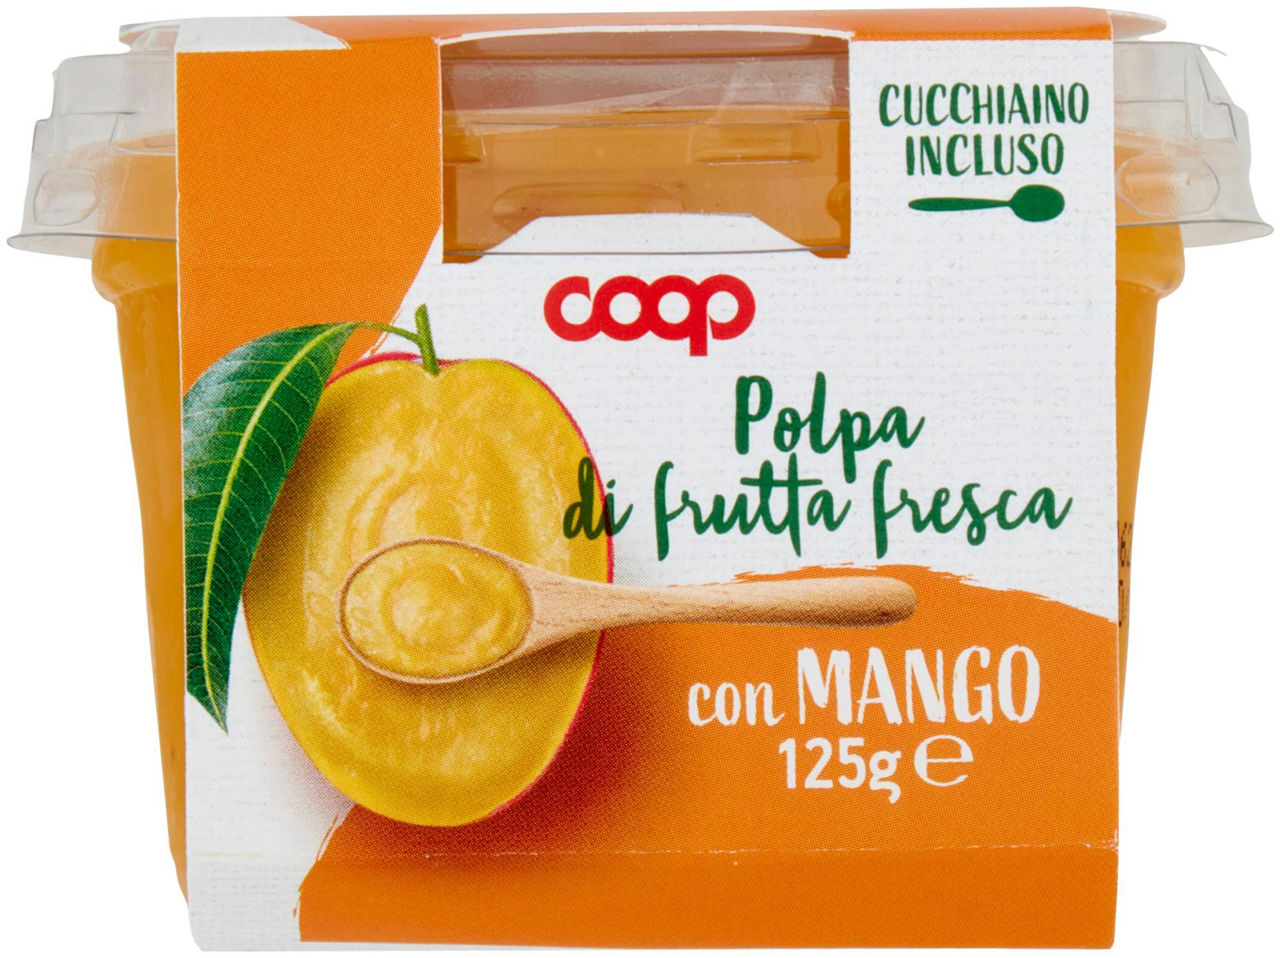 POLPA DI FRUTTA FRESCA CON MANGO 125G - 5